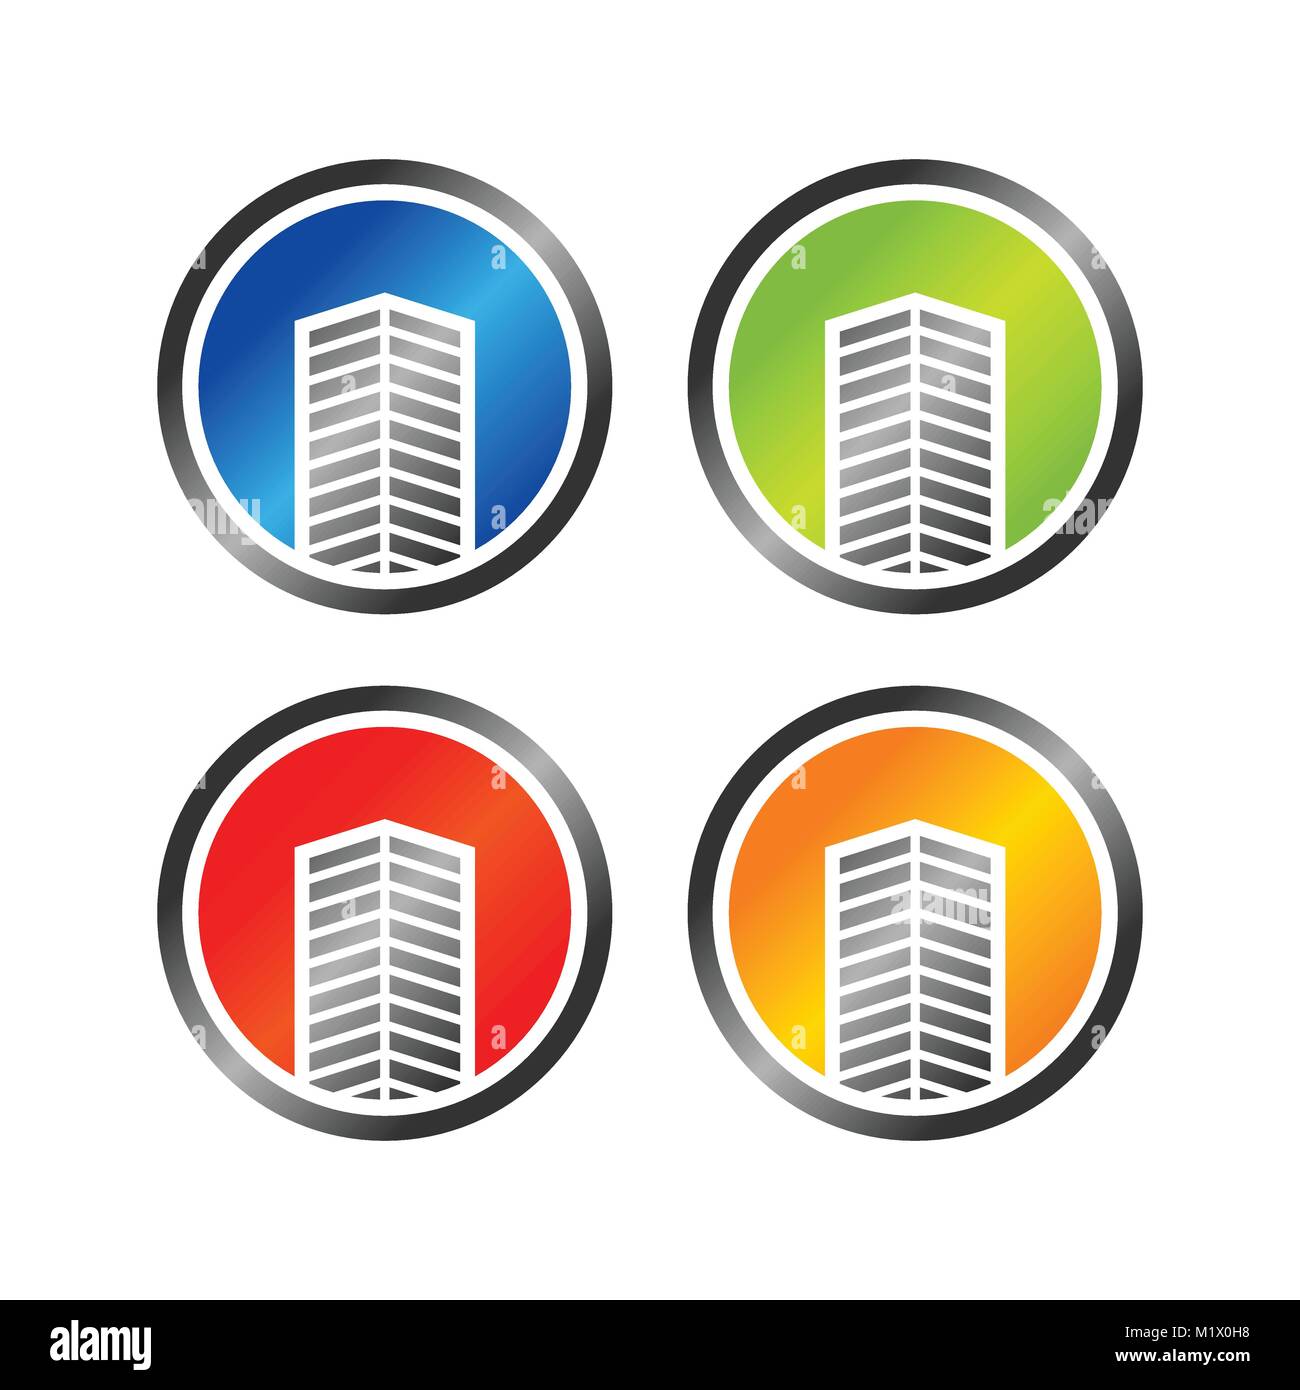 Bâtiment commercial symbole abstrait icônes graphique vectoriel Logo Design Illustration de Vecteur